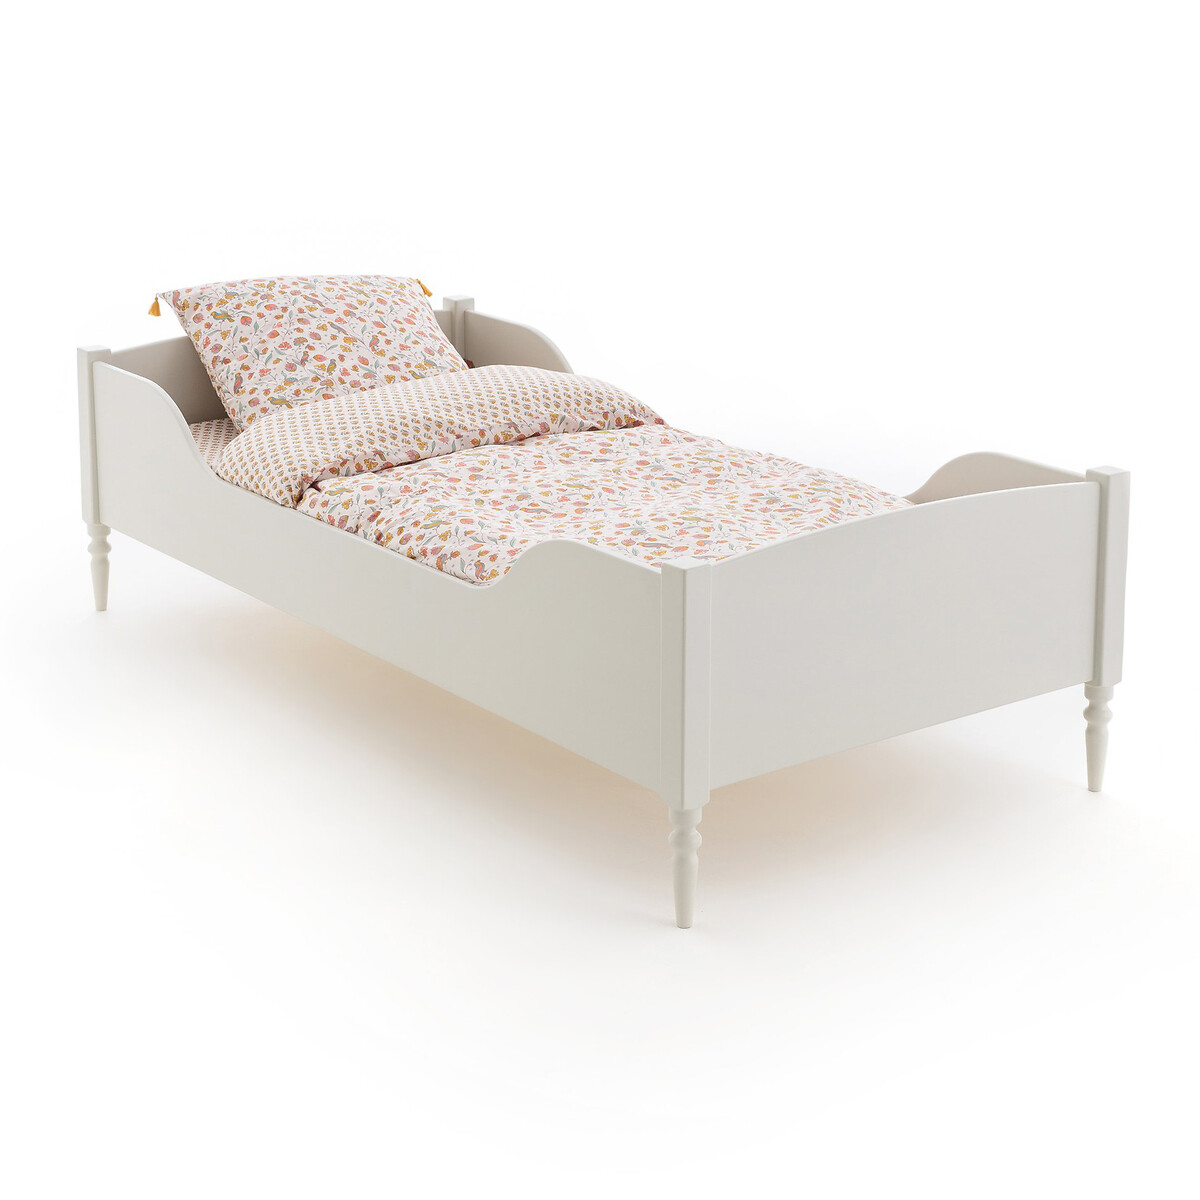 кровать детская из ротанга katsuki 90 x 190 см бежевый Кровать детская с сеткой CLA 90 x 190 см бежевый